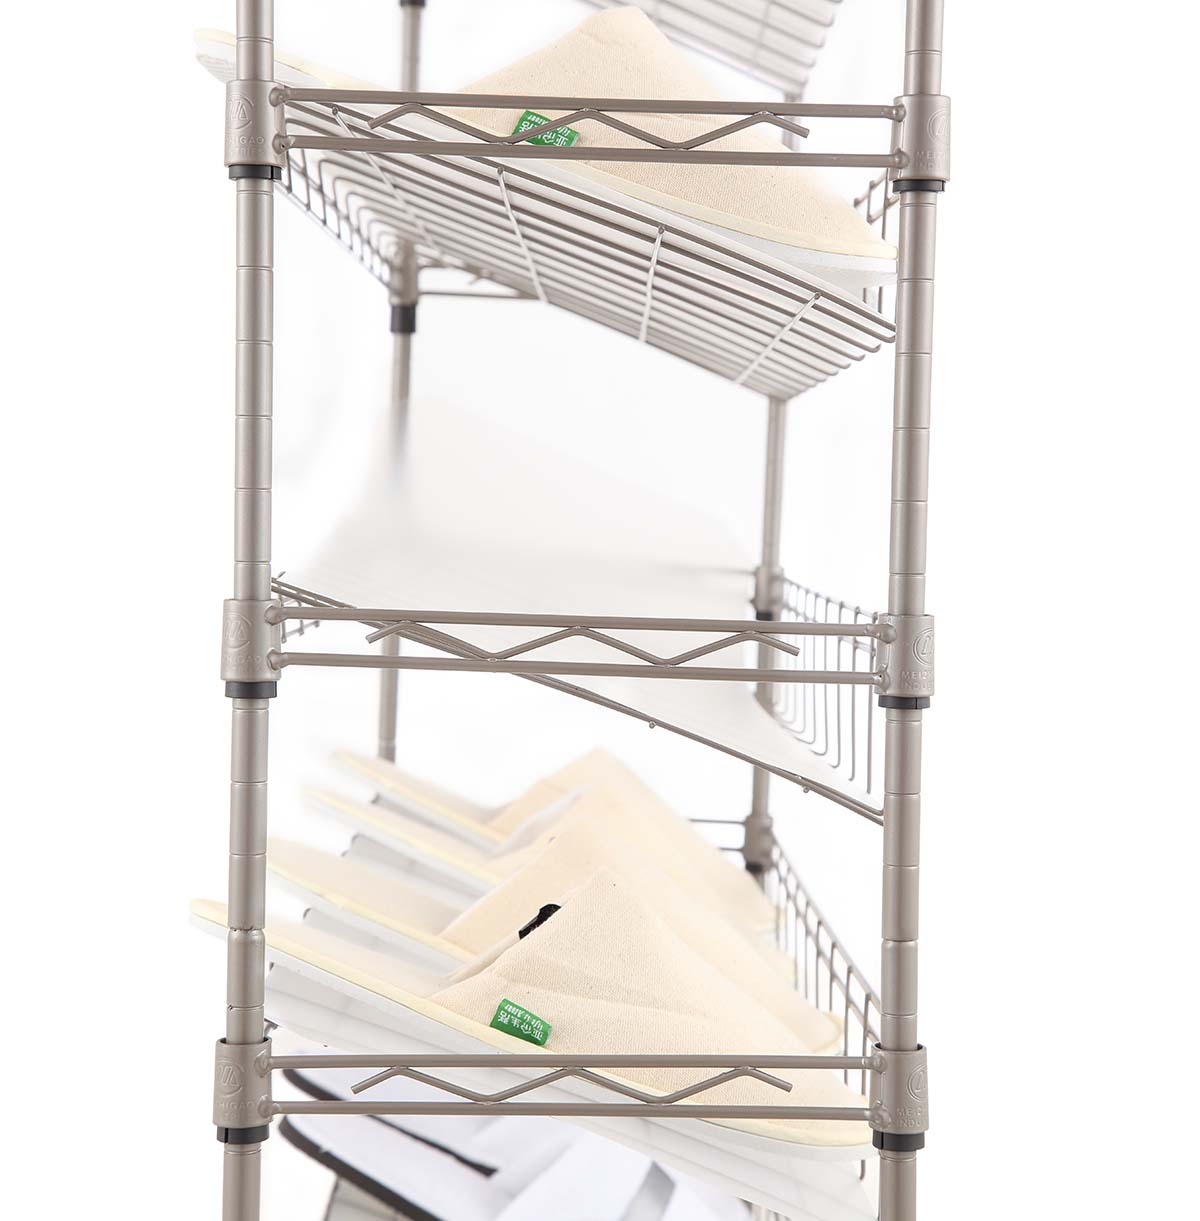 4-shelf wire storage rack Production